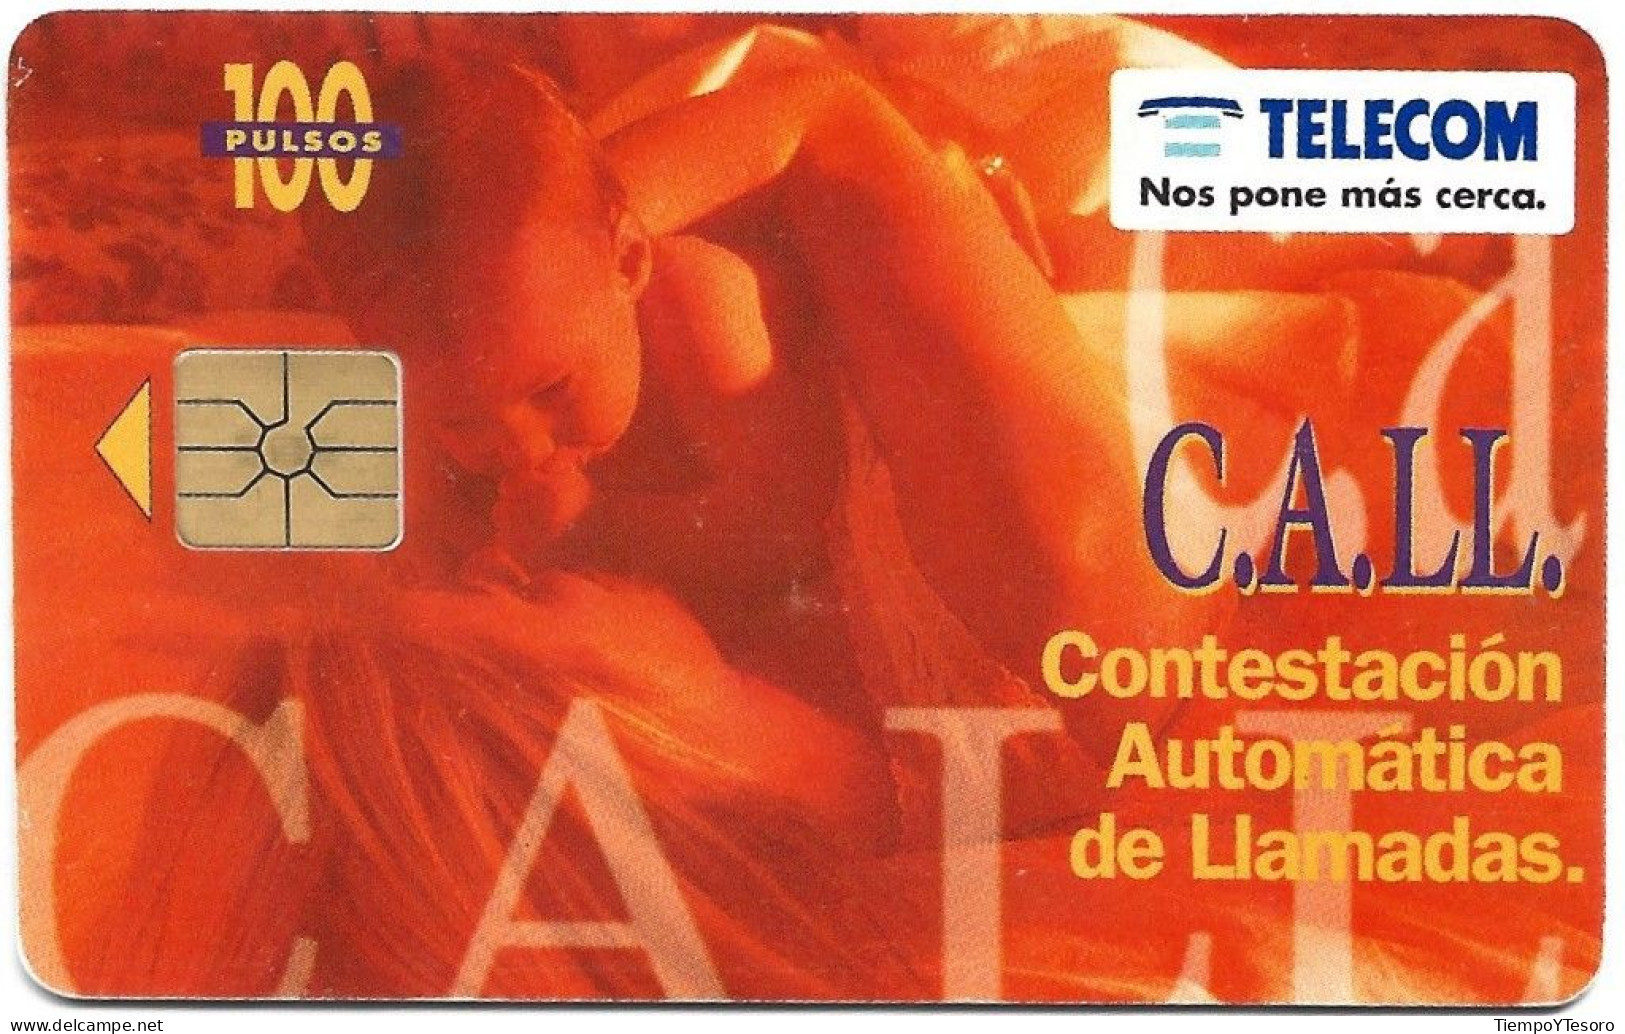 Phonecard - Argentina, C.A.LL. 2, Telecom, N°1081 - Argentinië